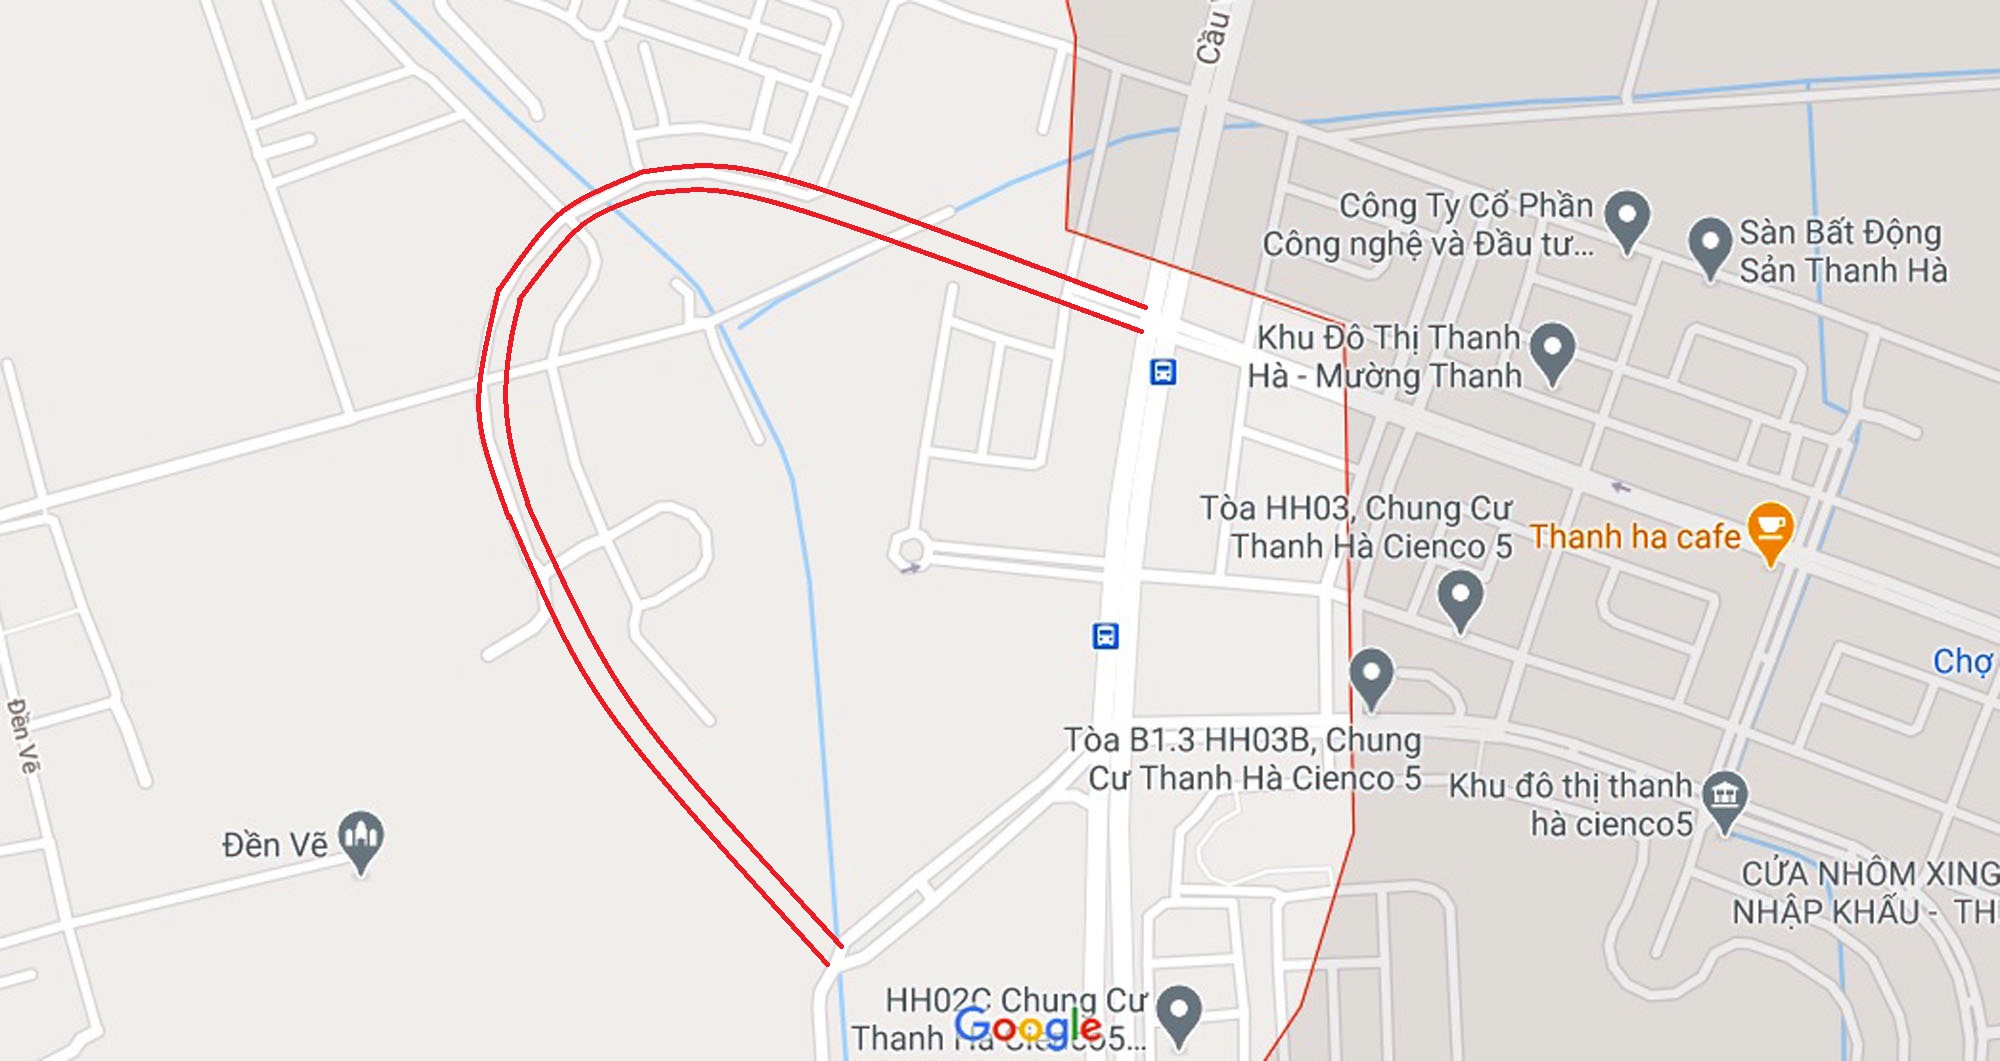 Sơ đồ tuyến đường đôi quanh ô đất qui hoạch đào hồ nước ở phường Phú Lương. (Nguồn ảnh: Google).